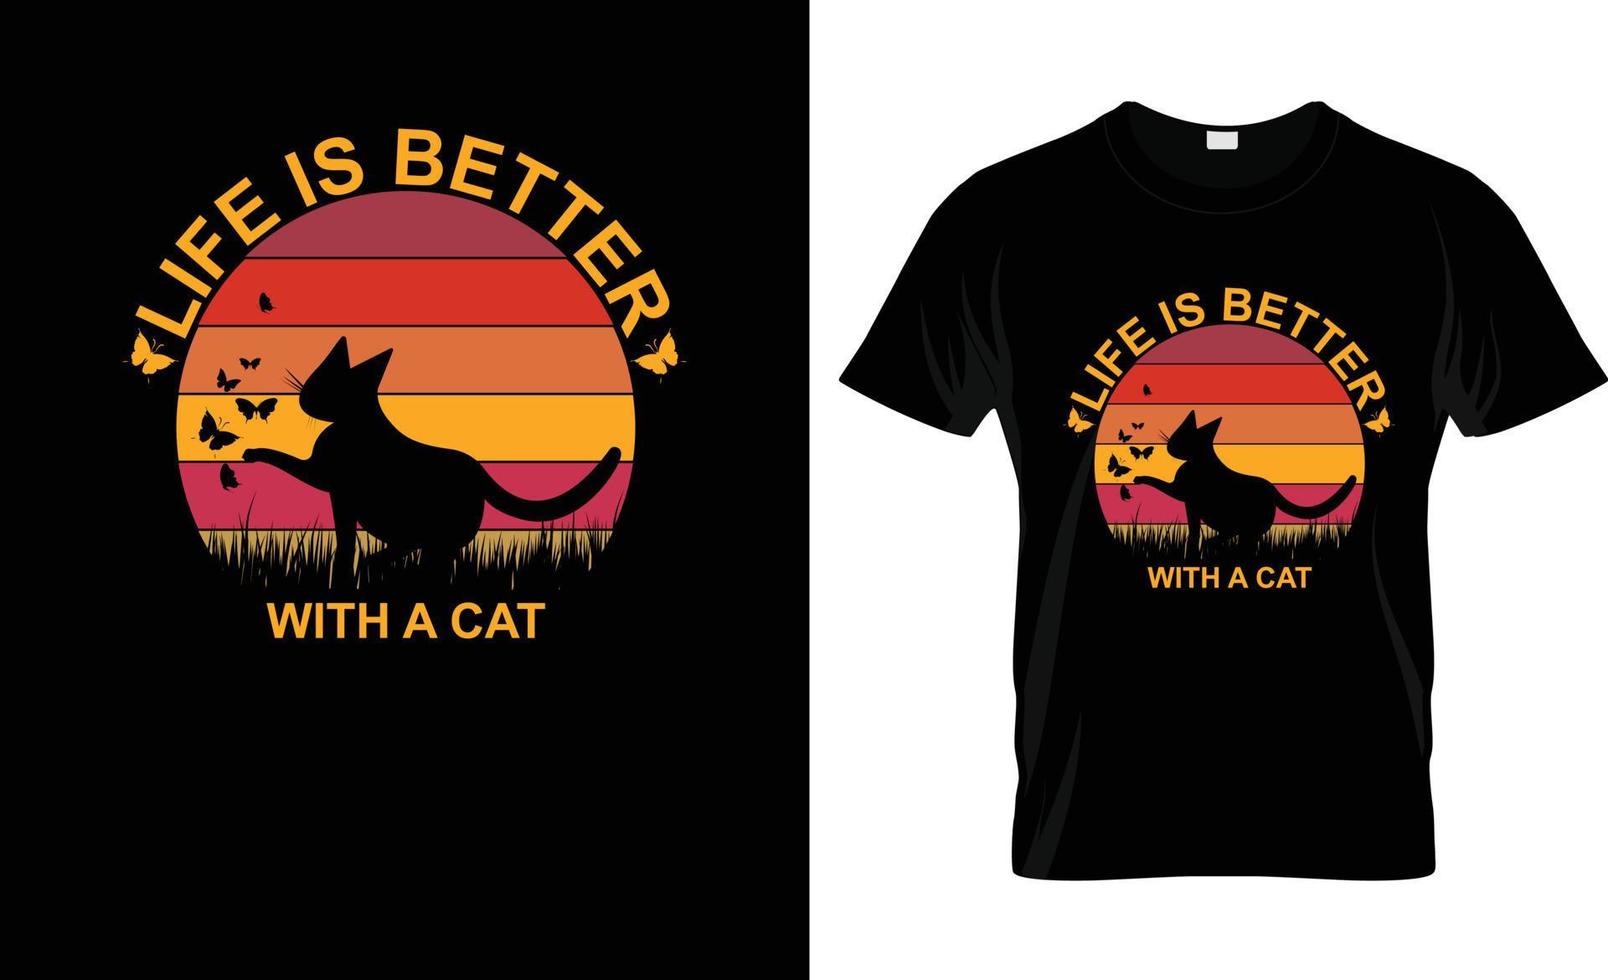 liv är bättre med en katt Citat t-shirt design och ny design. liv är bättre med en katt. katt t-shirt design, katt slogan, affisch, baner, mugg, klistermärke. katt Citat t-shirt design mall vektor. vektor